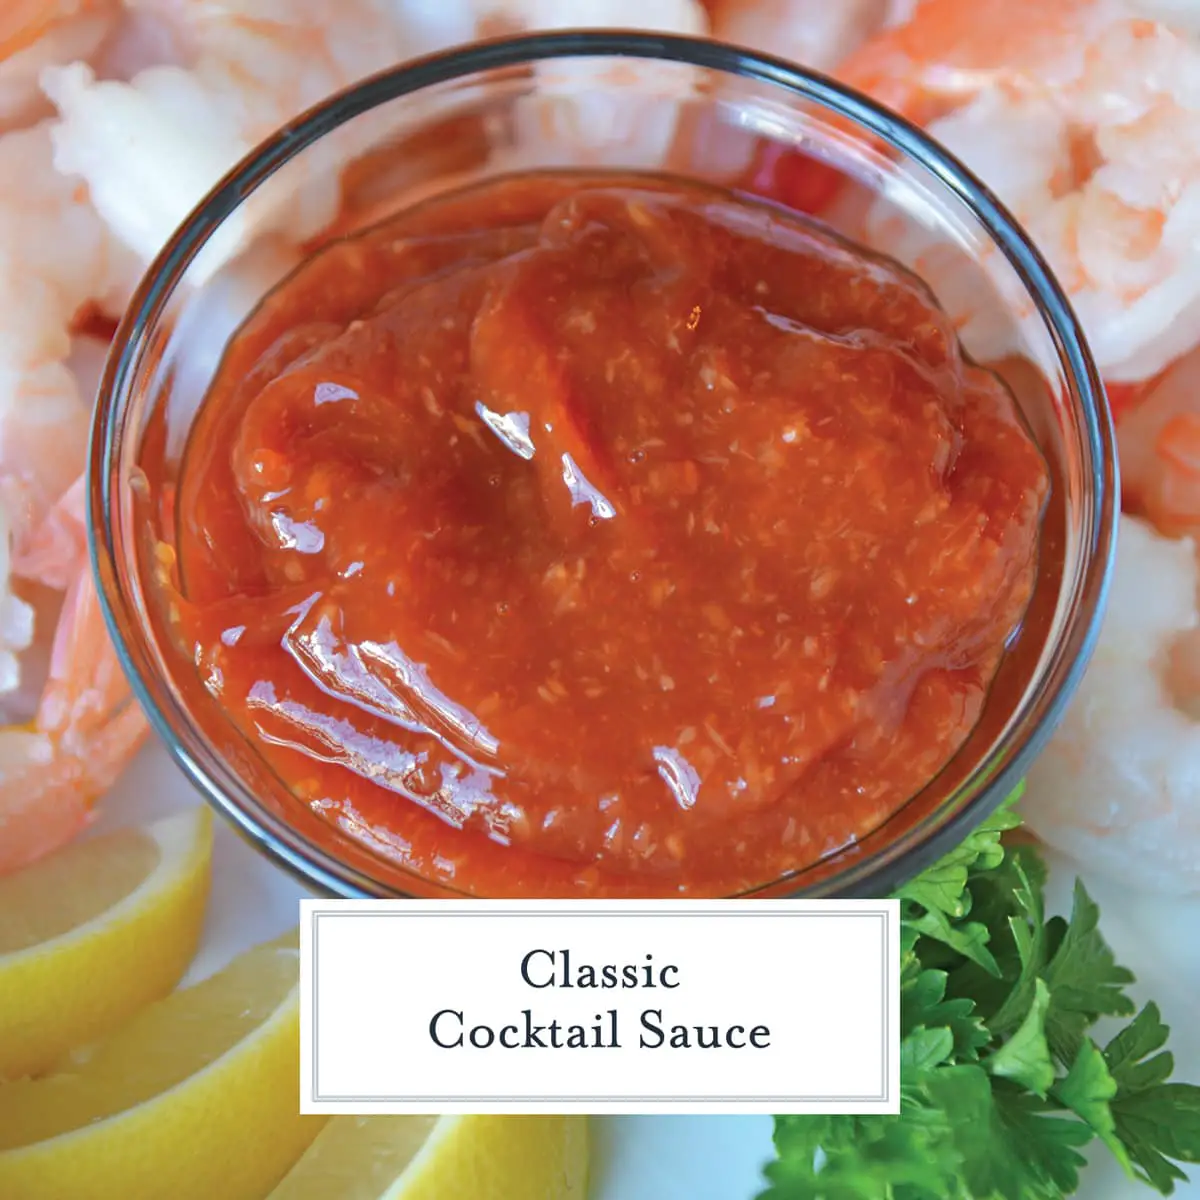 Classic Cocktail Sauce Recipe